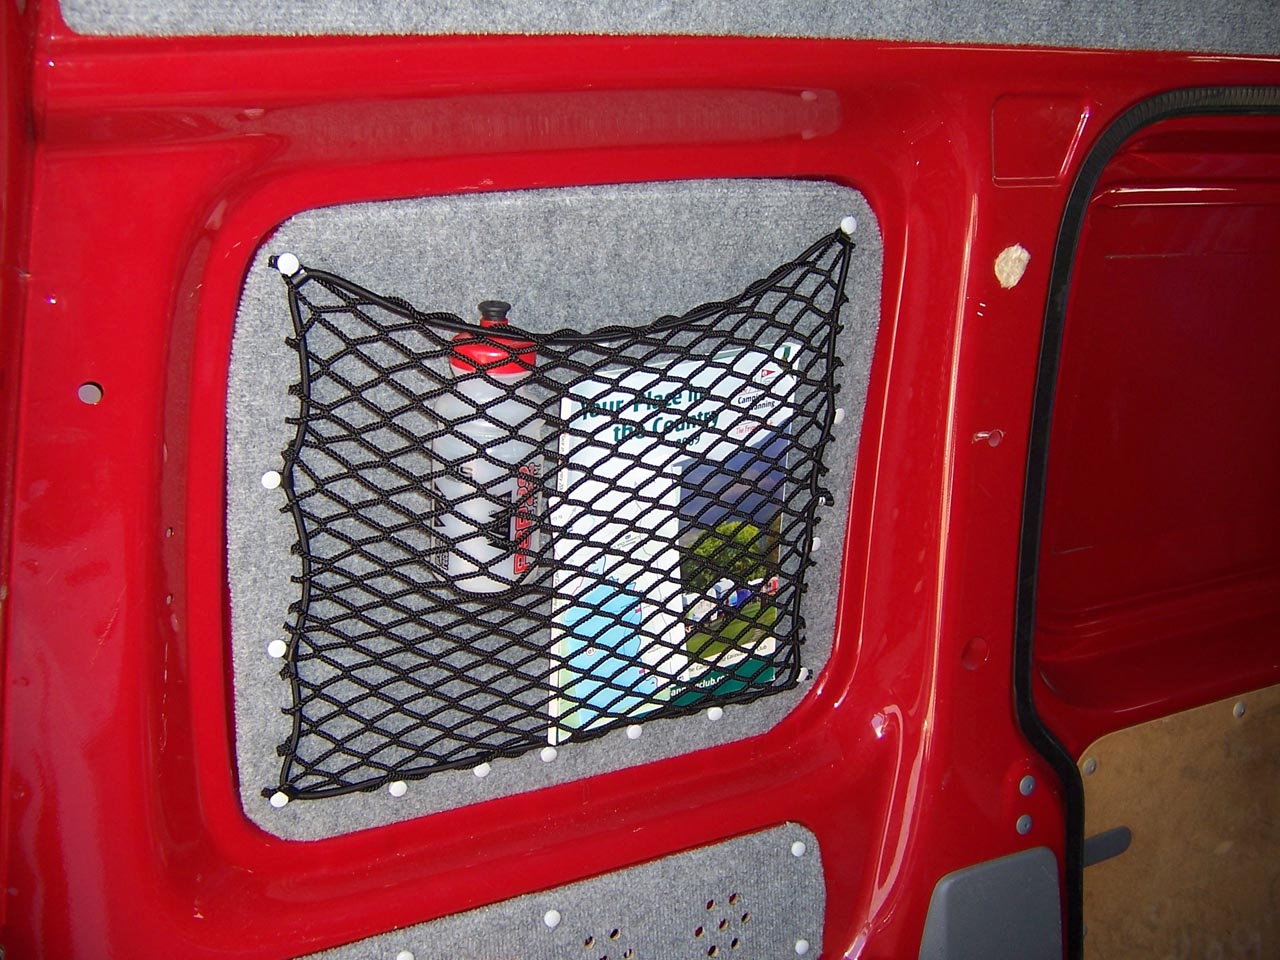 Bespoke elastic net showing items stored in a van